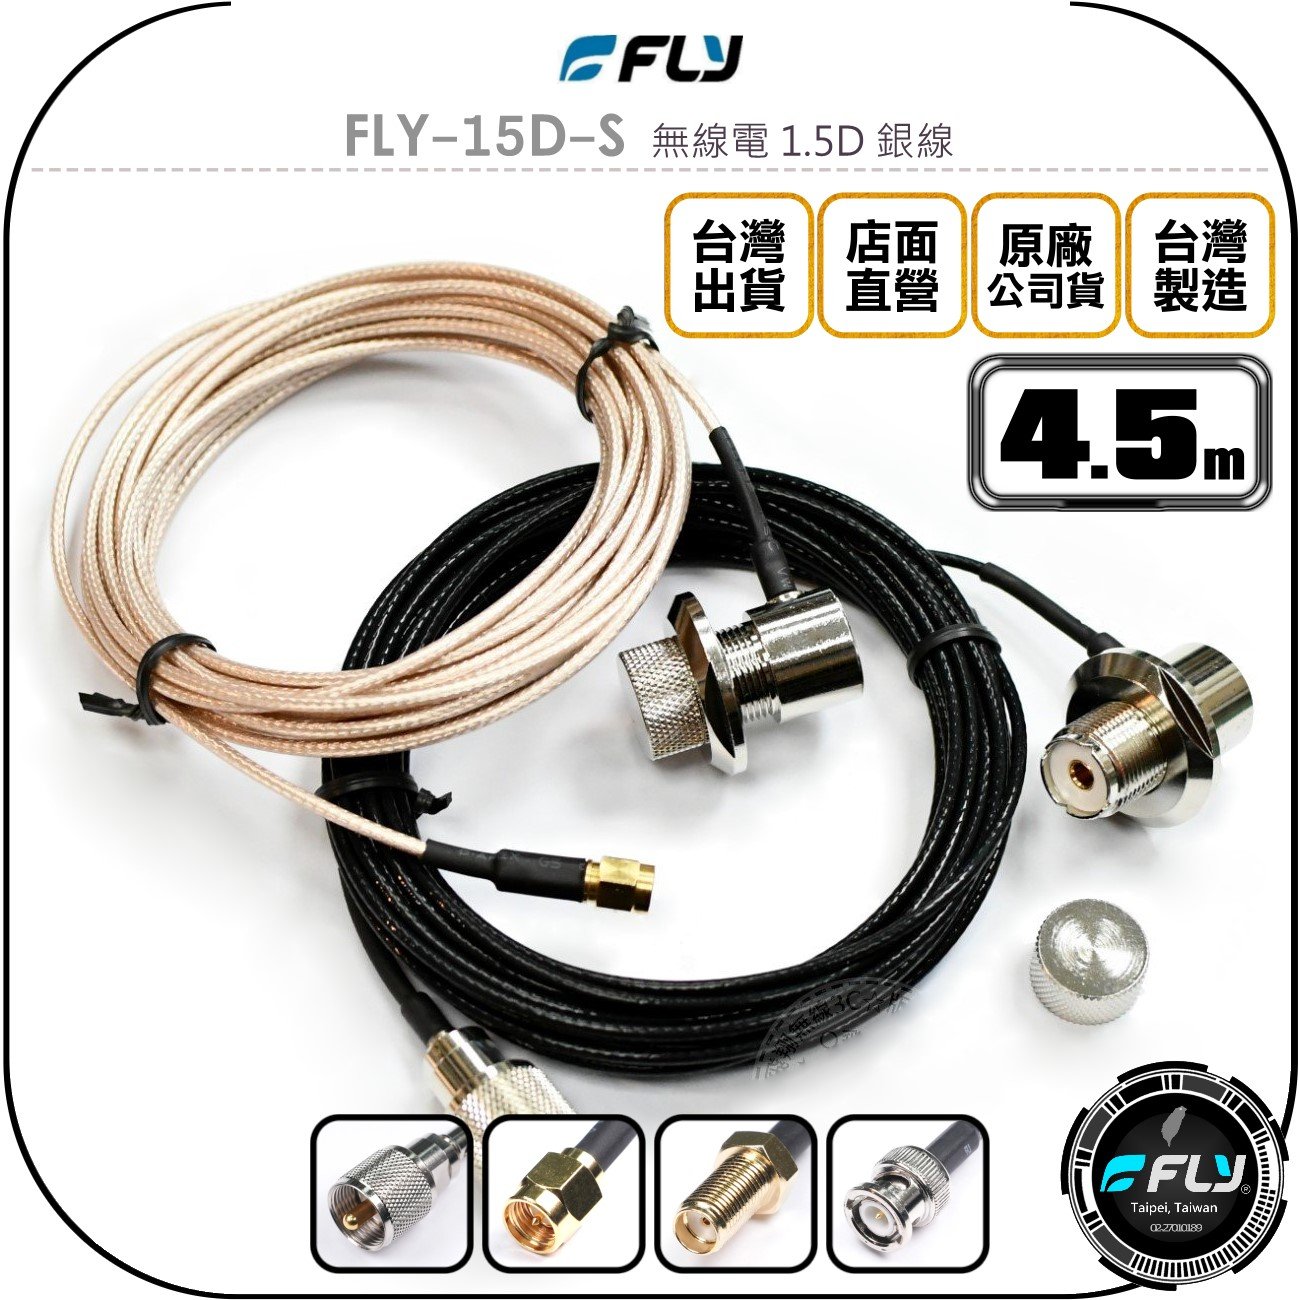 《飛翔無線3C》FLY FLY-15D-S 無線電 1.5D 銀線 4.5m◉公司貨◉訊號線◉對講機收發◉車機外接傳輸